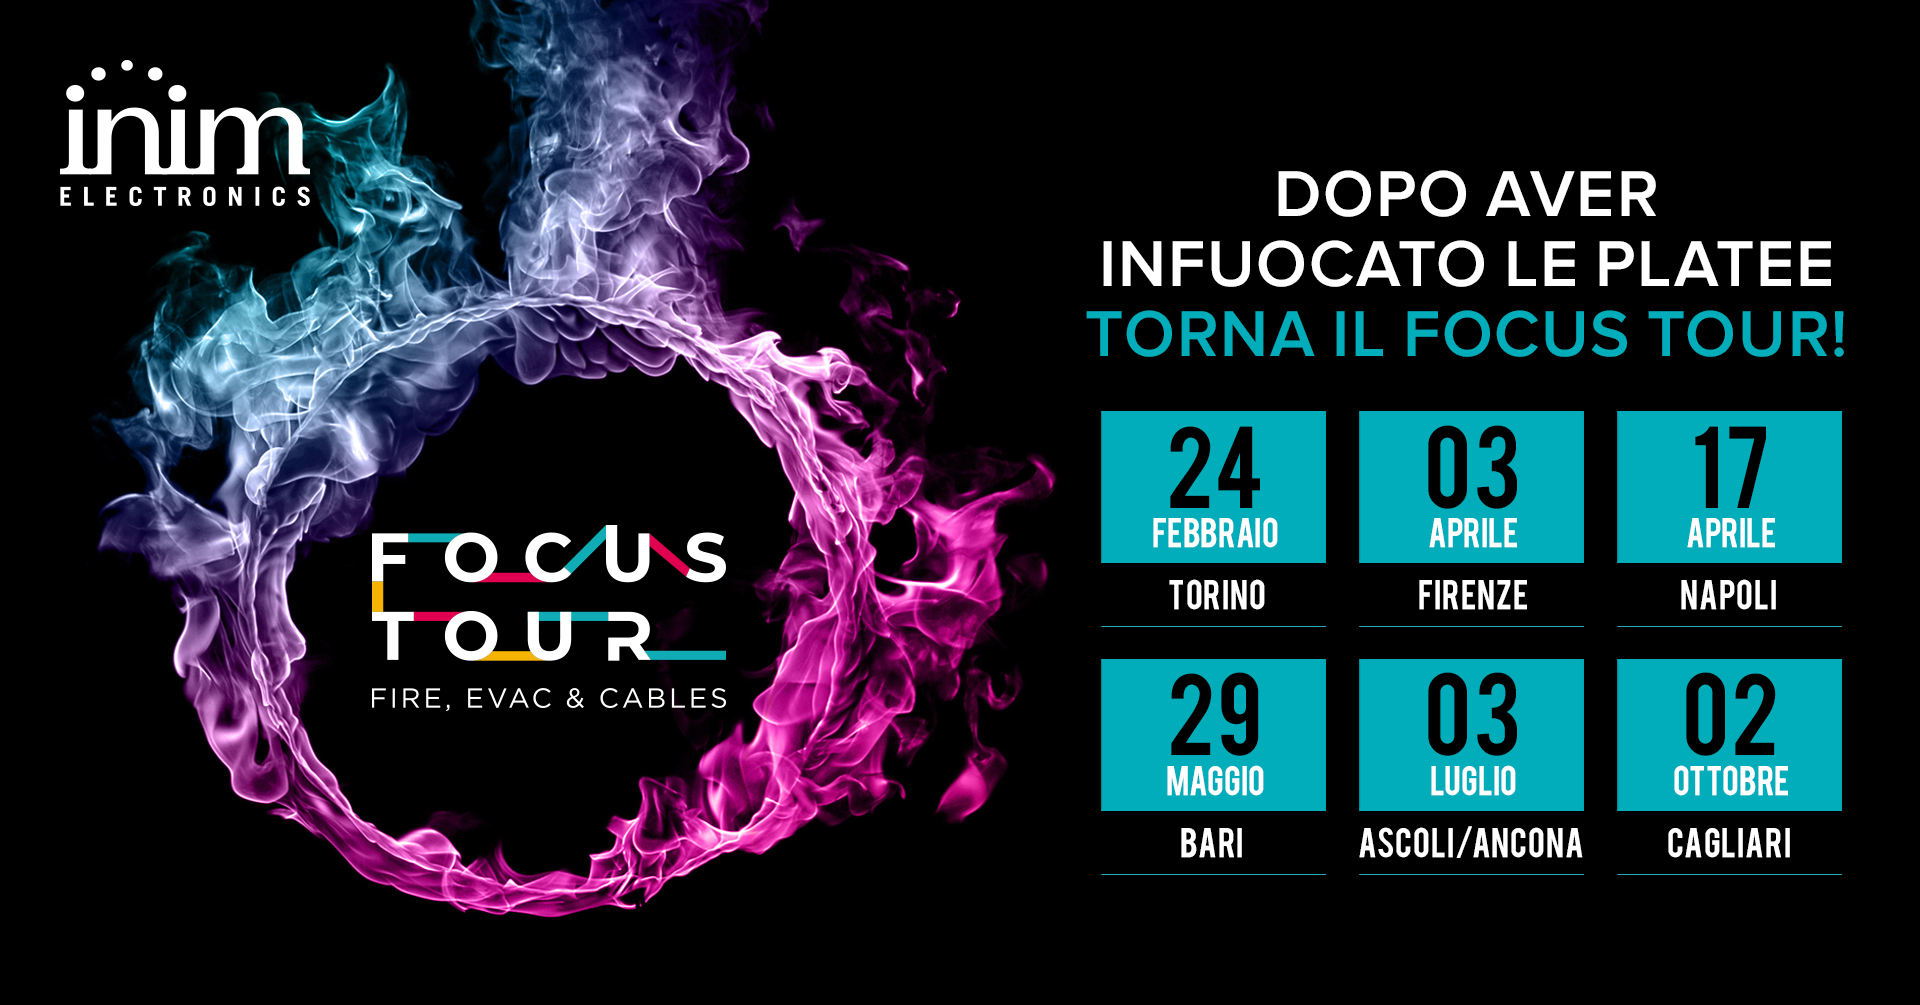 Focus tour 2020